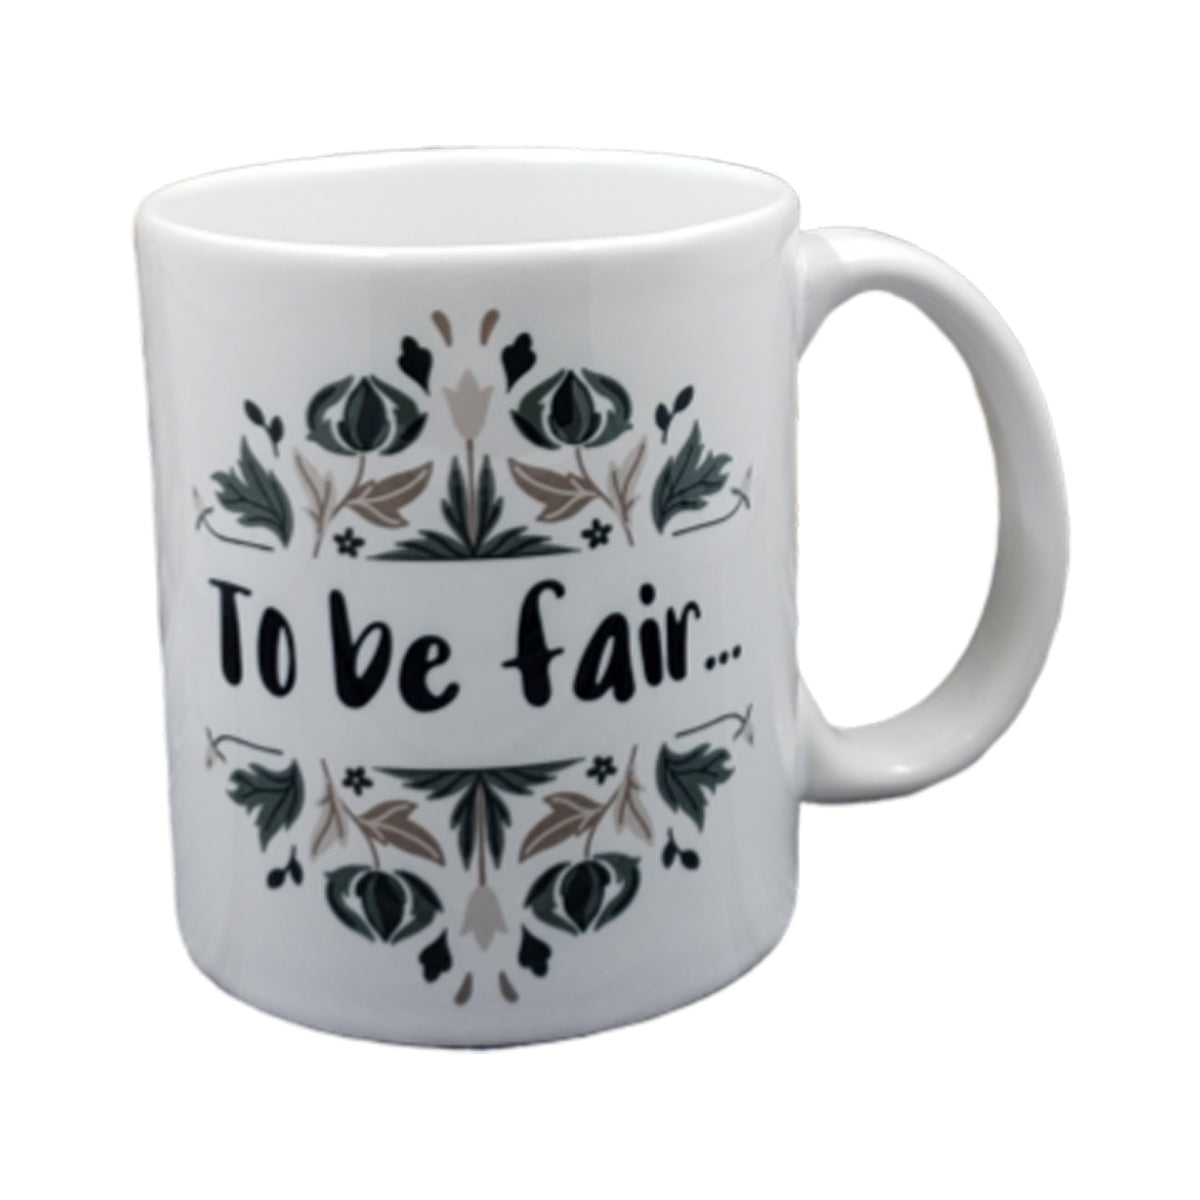 To Be Fair Mug